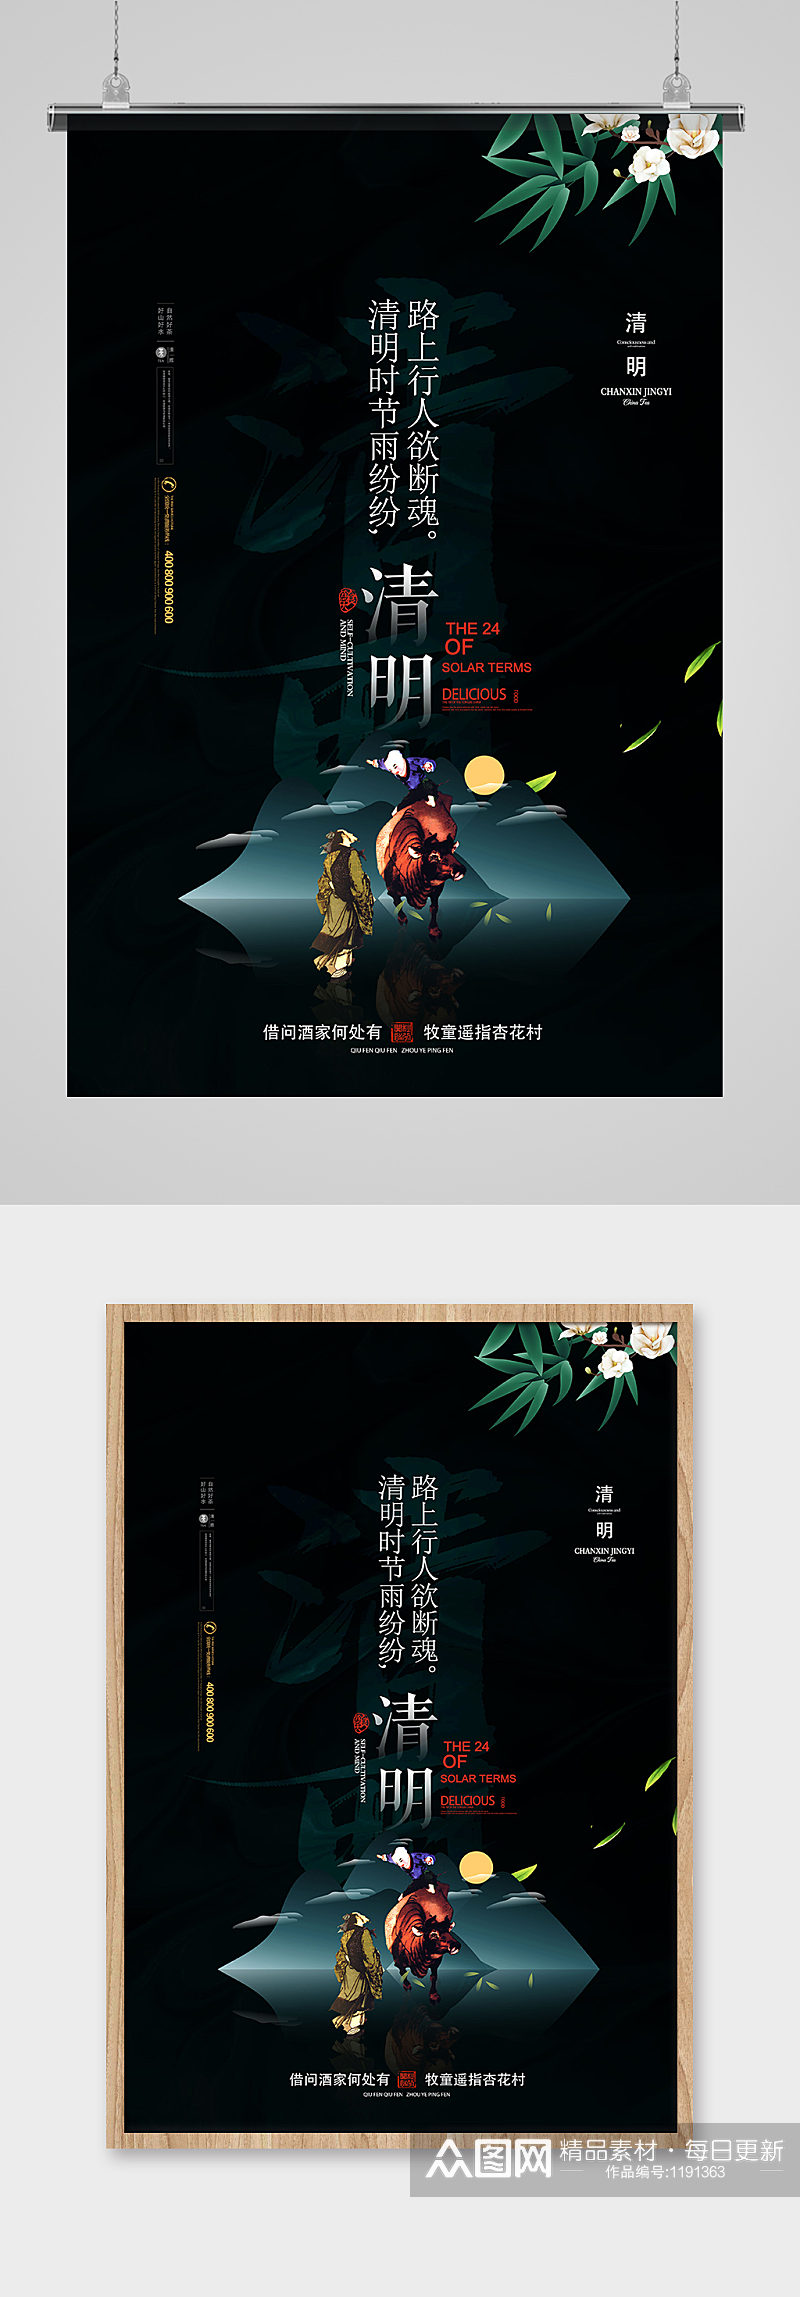 创意高端中国风清明节海报设计素材